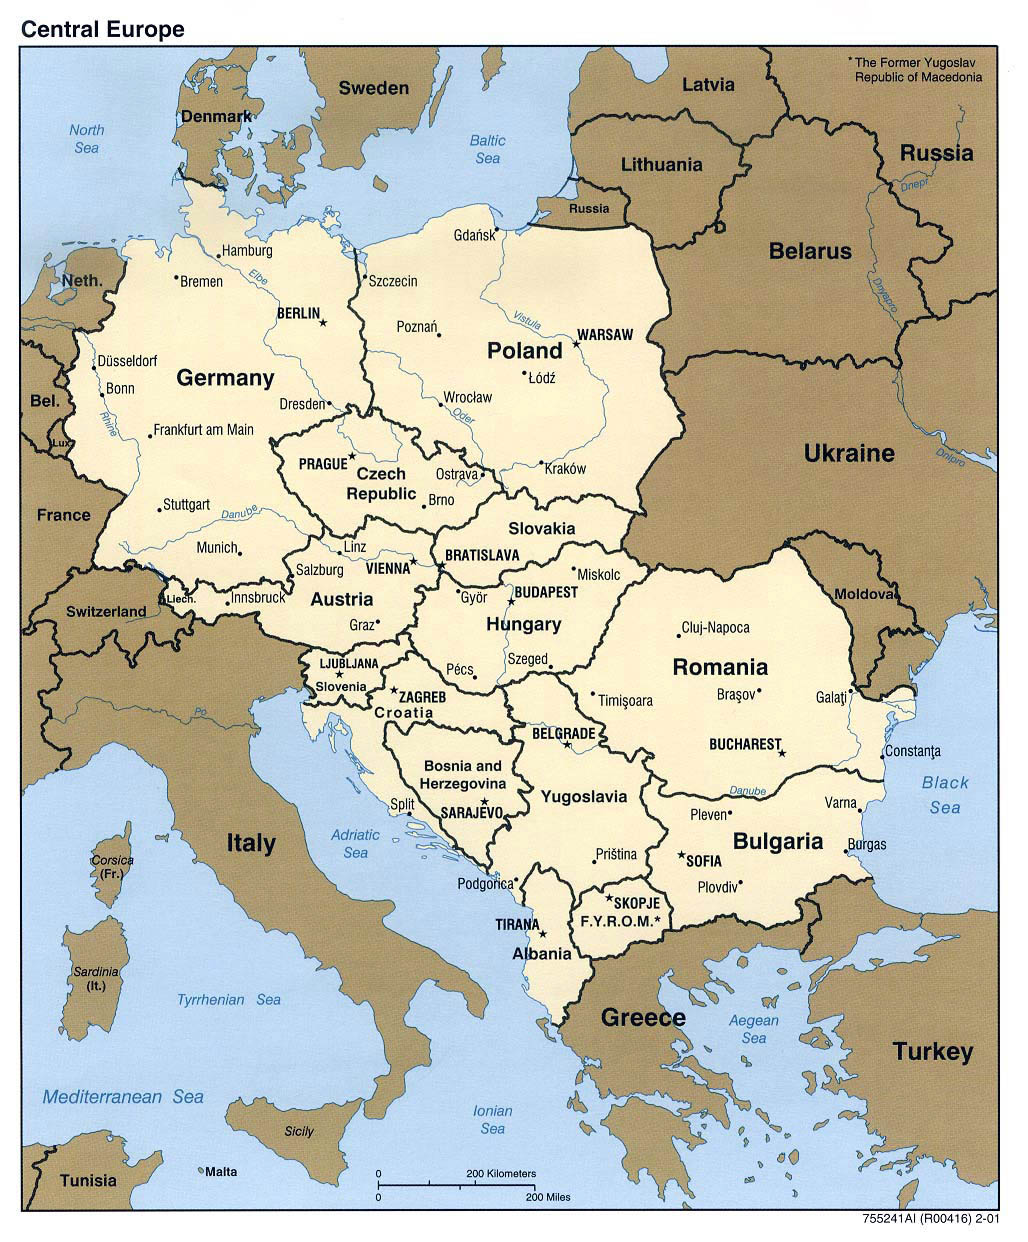 Mapa político detallado de Europa Central - 2001 | Europa Central